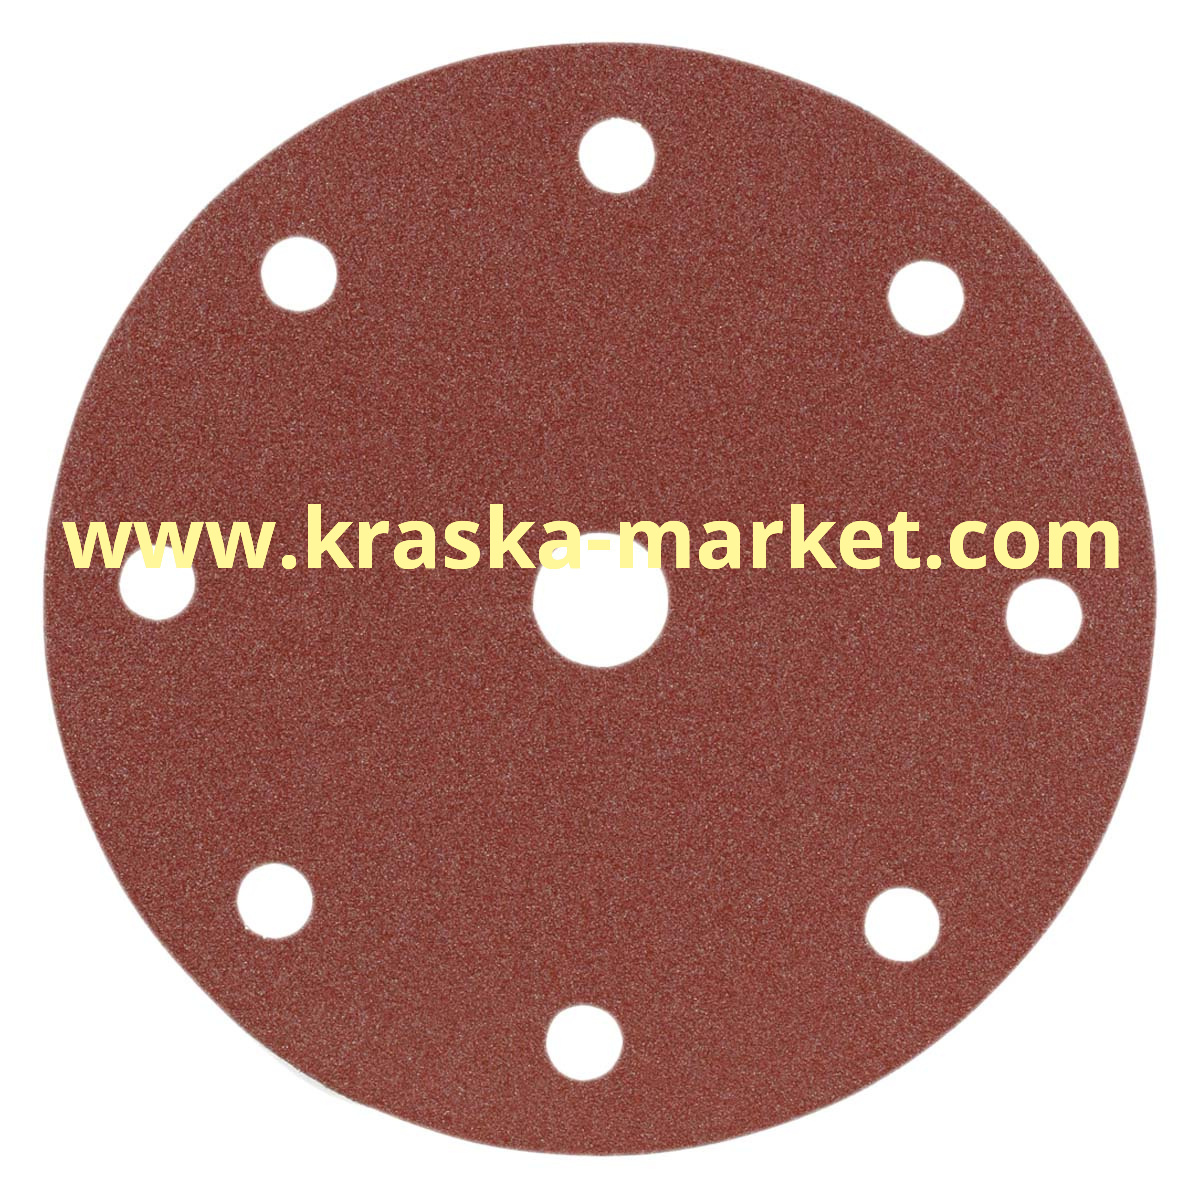 Круг абразивный, красный, 15 отверстий, Р180, 150 мм. Производитель: Indasa.